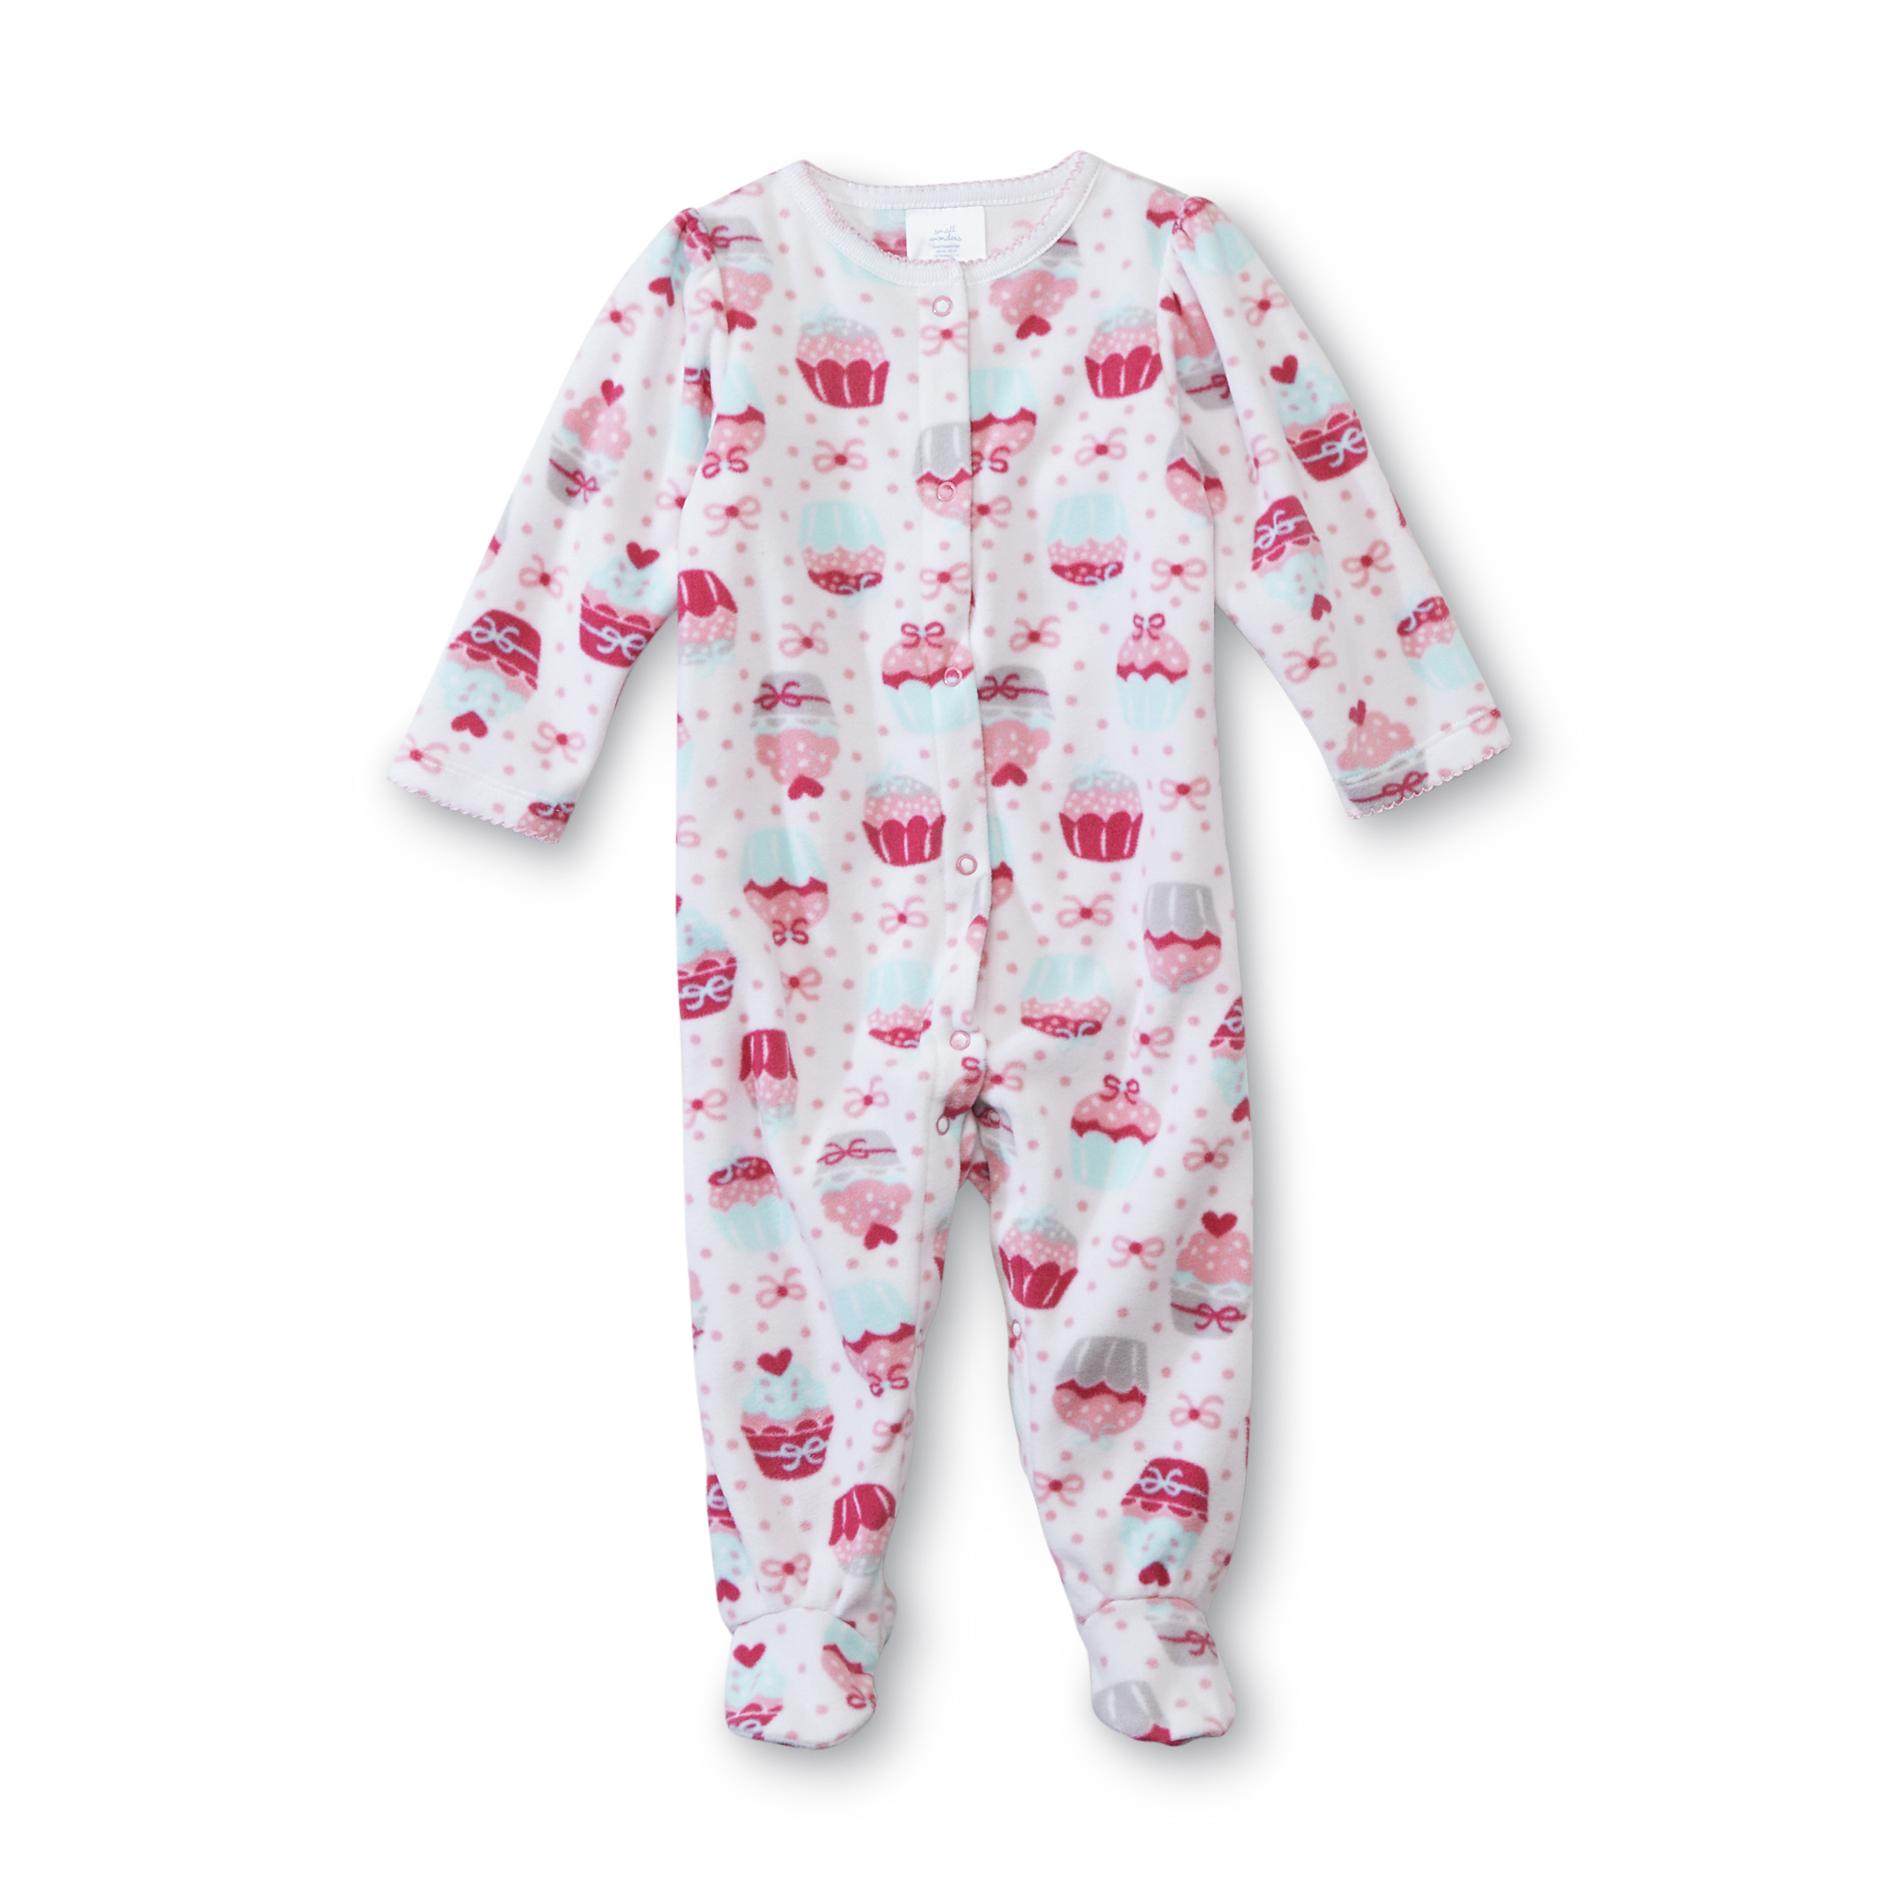 Small Wonders Newborn Girl's Footed Pajamas - Cupcake